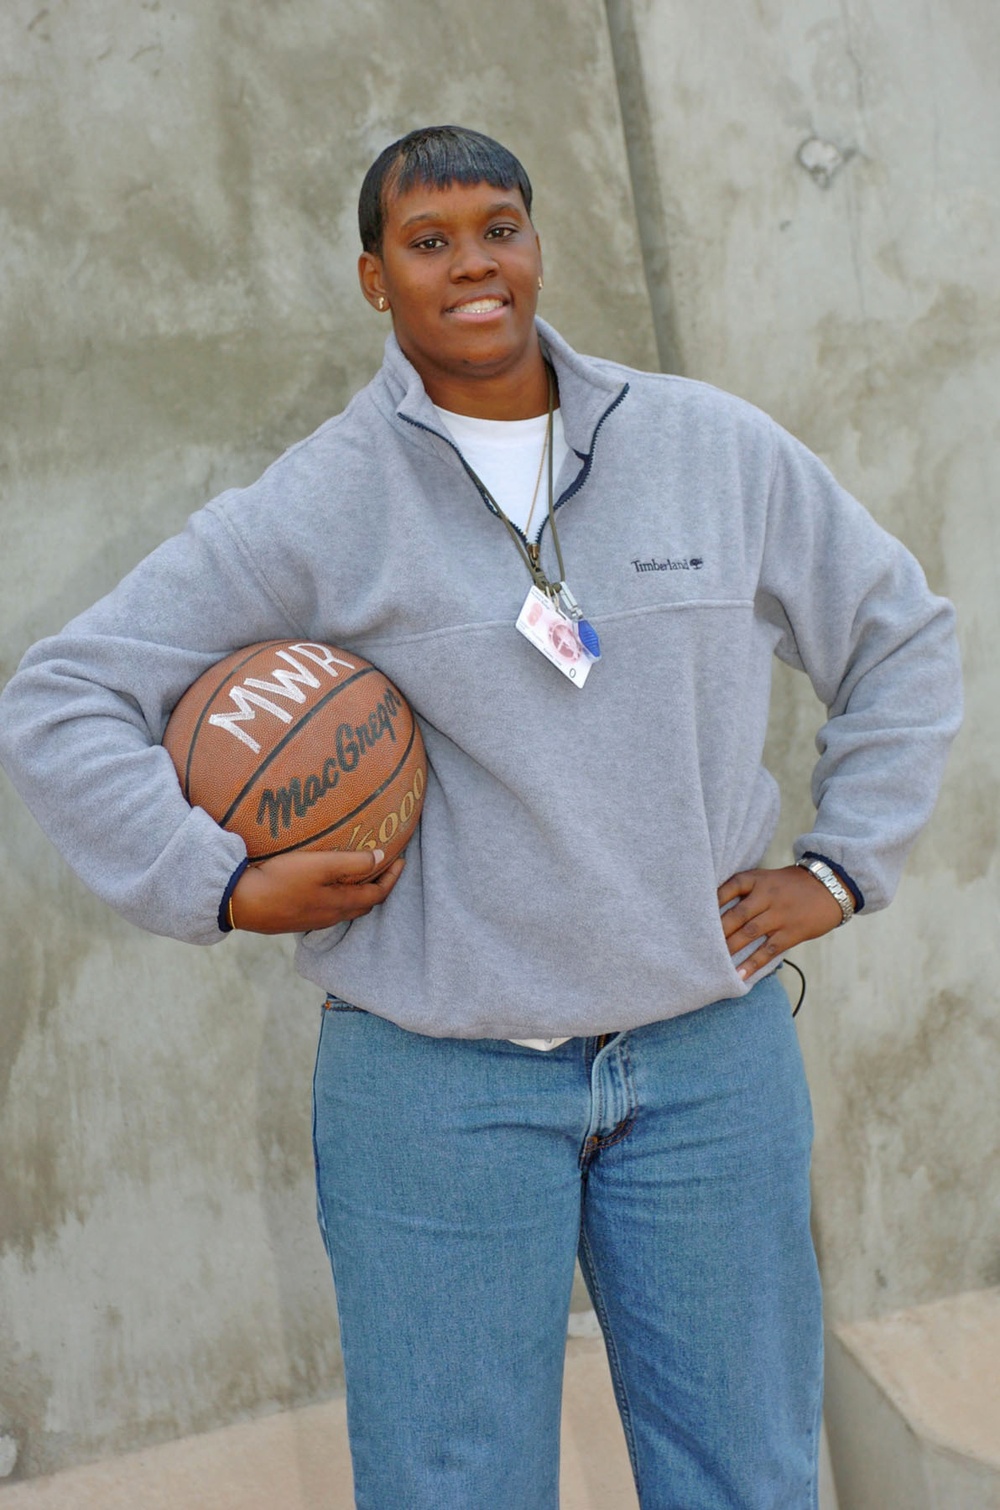 Yolanda Gaddy was an All-American college basketball player